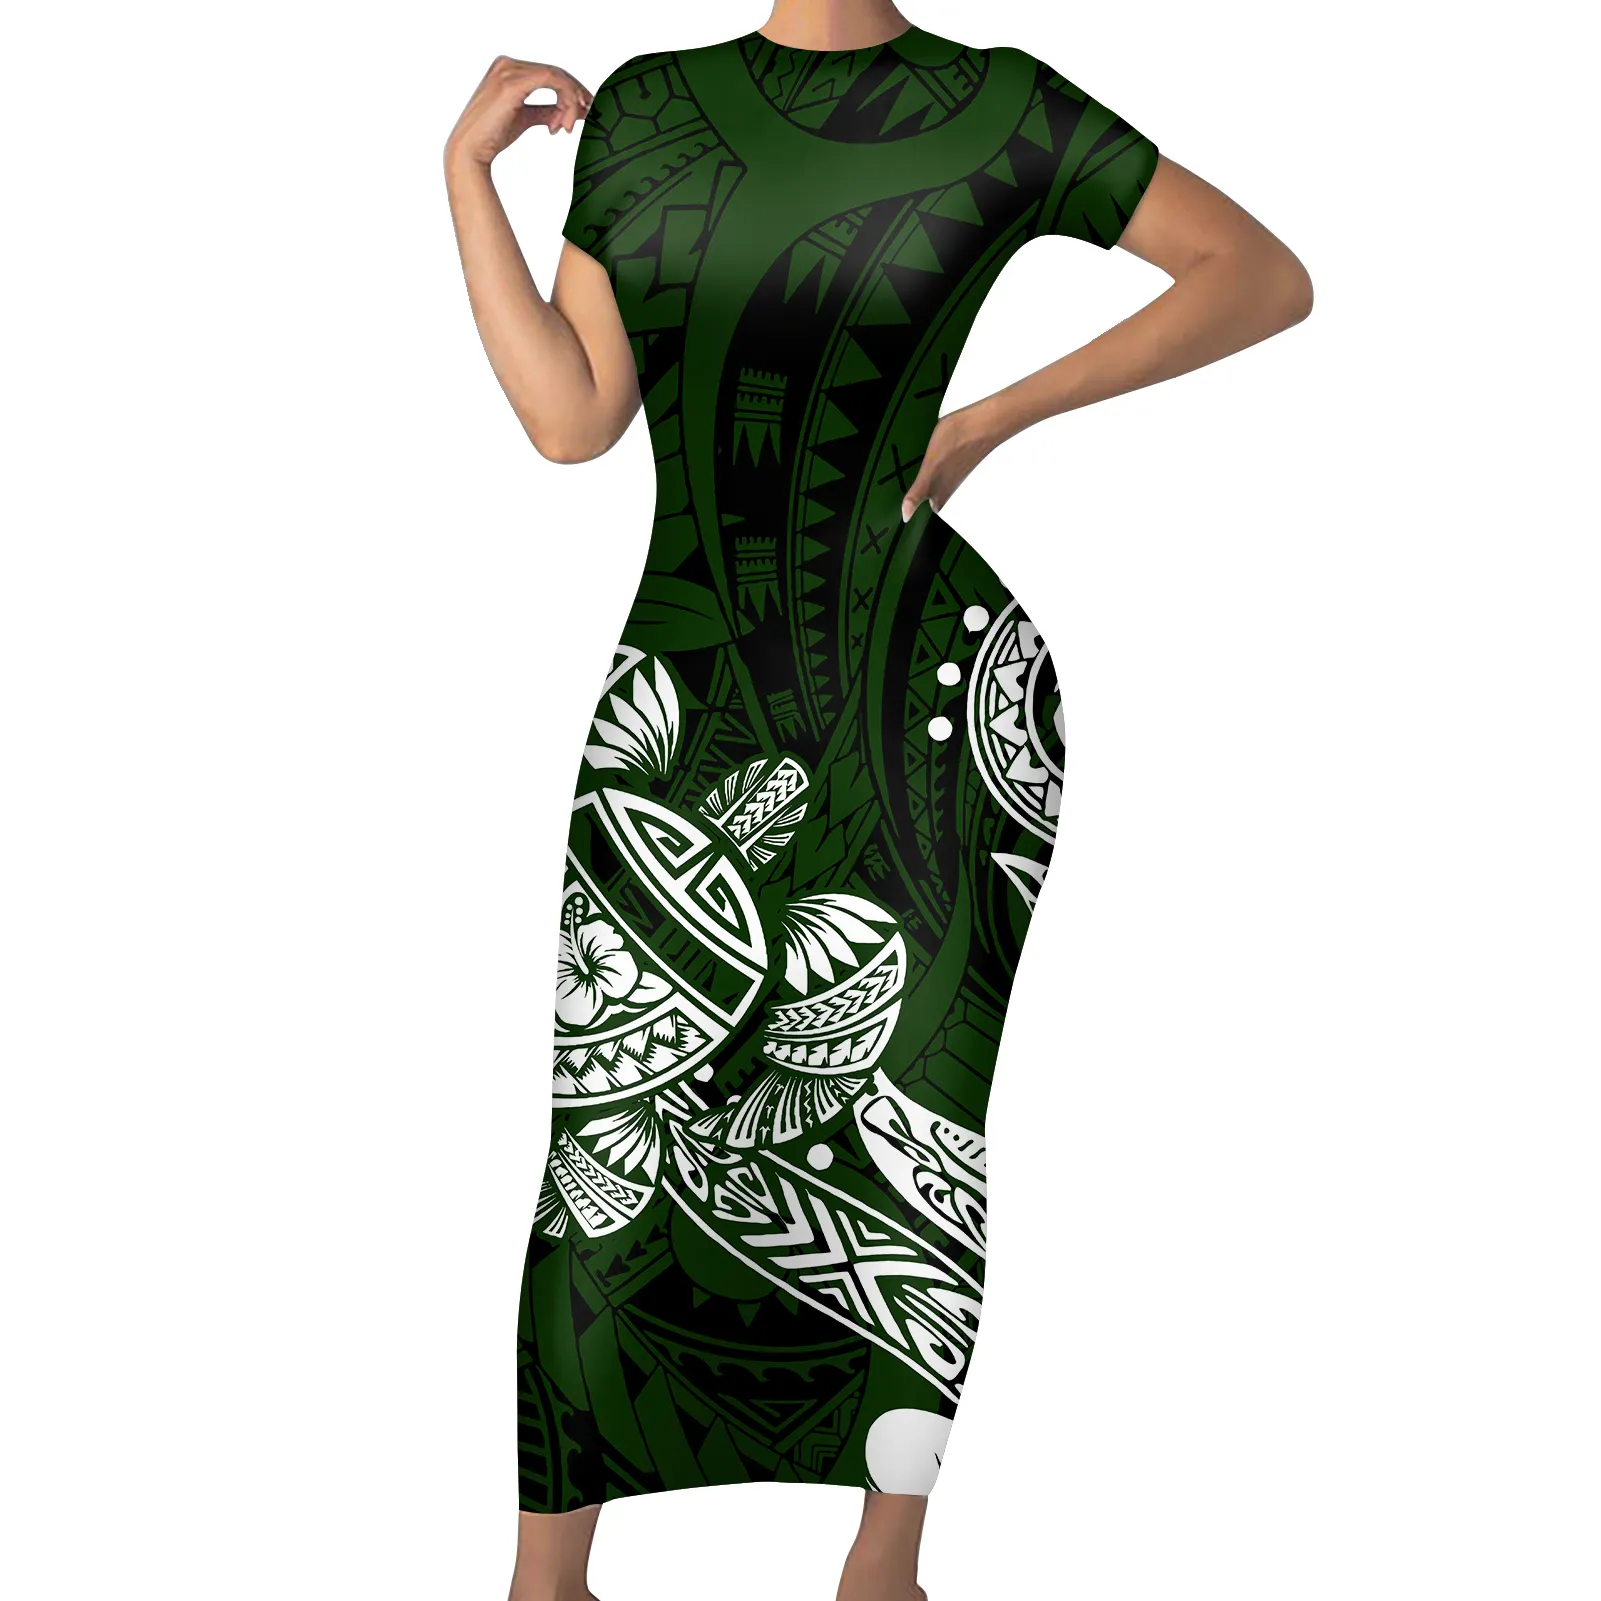 Robe longue moulante Style hawaïen pour femmes, tenue élégante, de haute qualité, confortable, respirante, manches courtes, prix d'usine